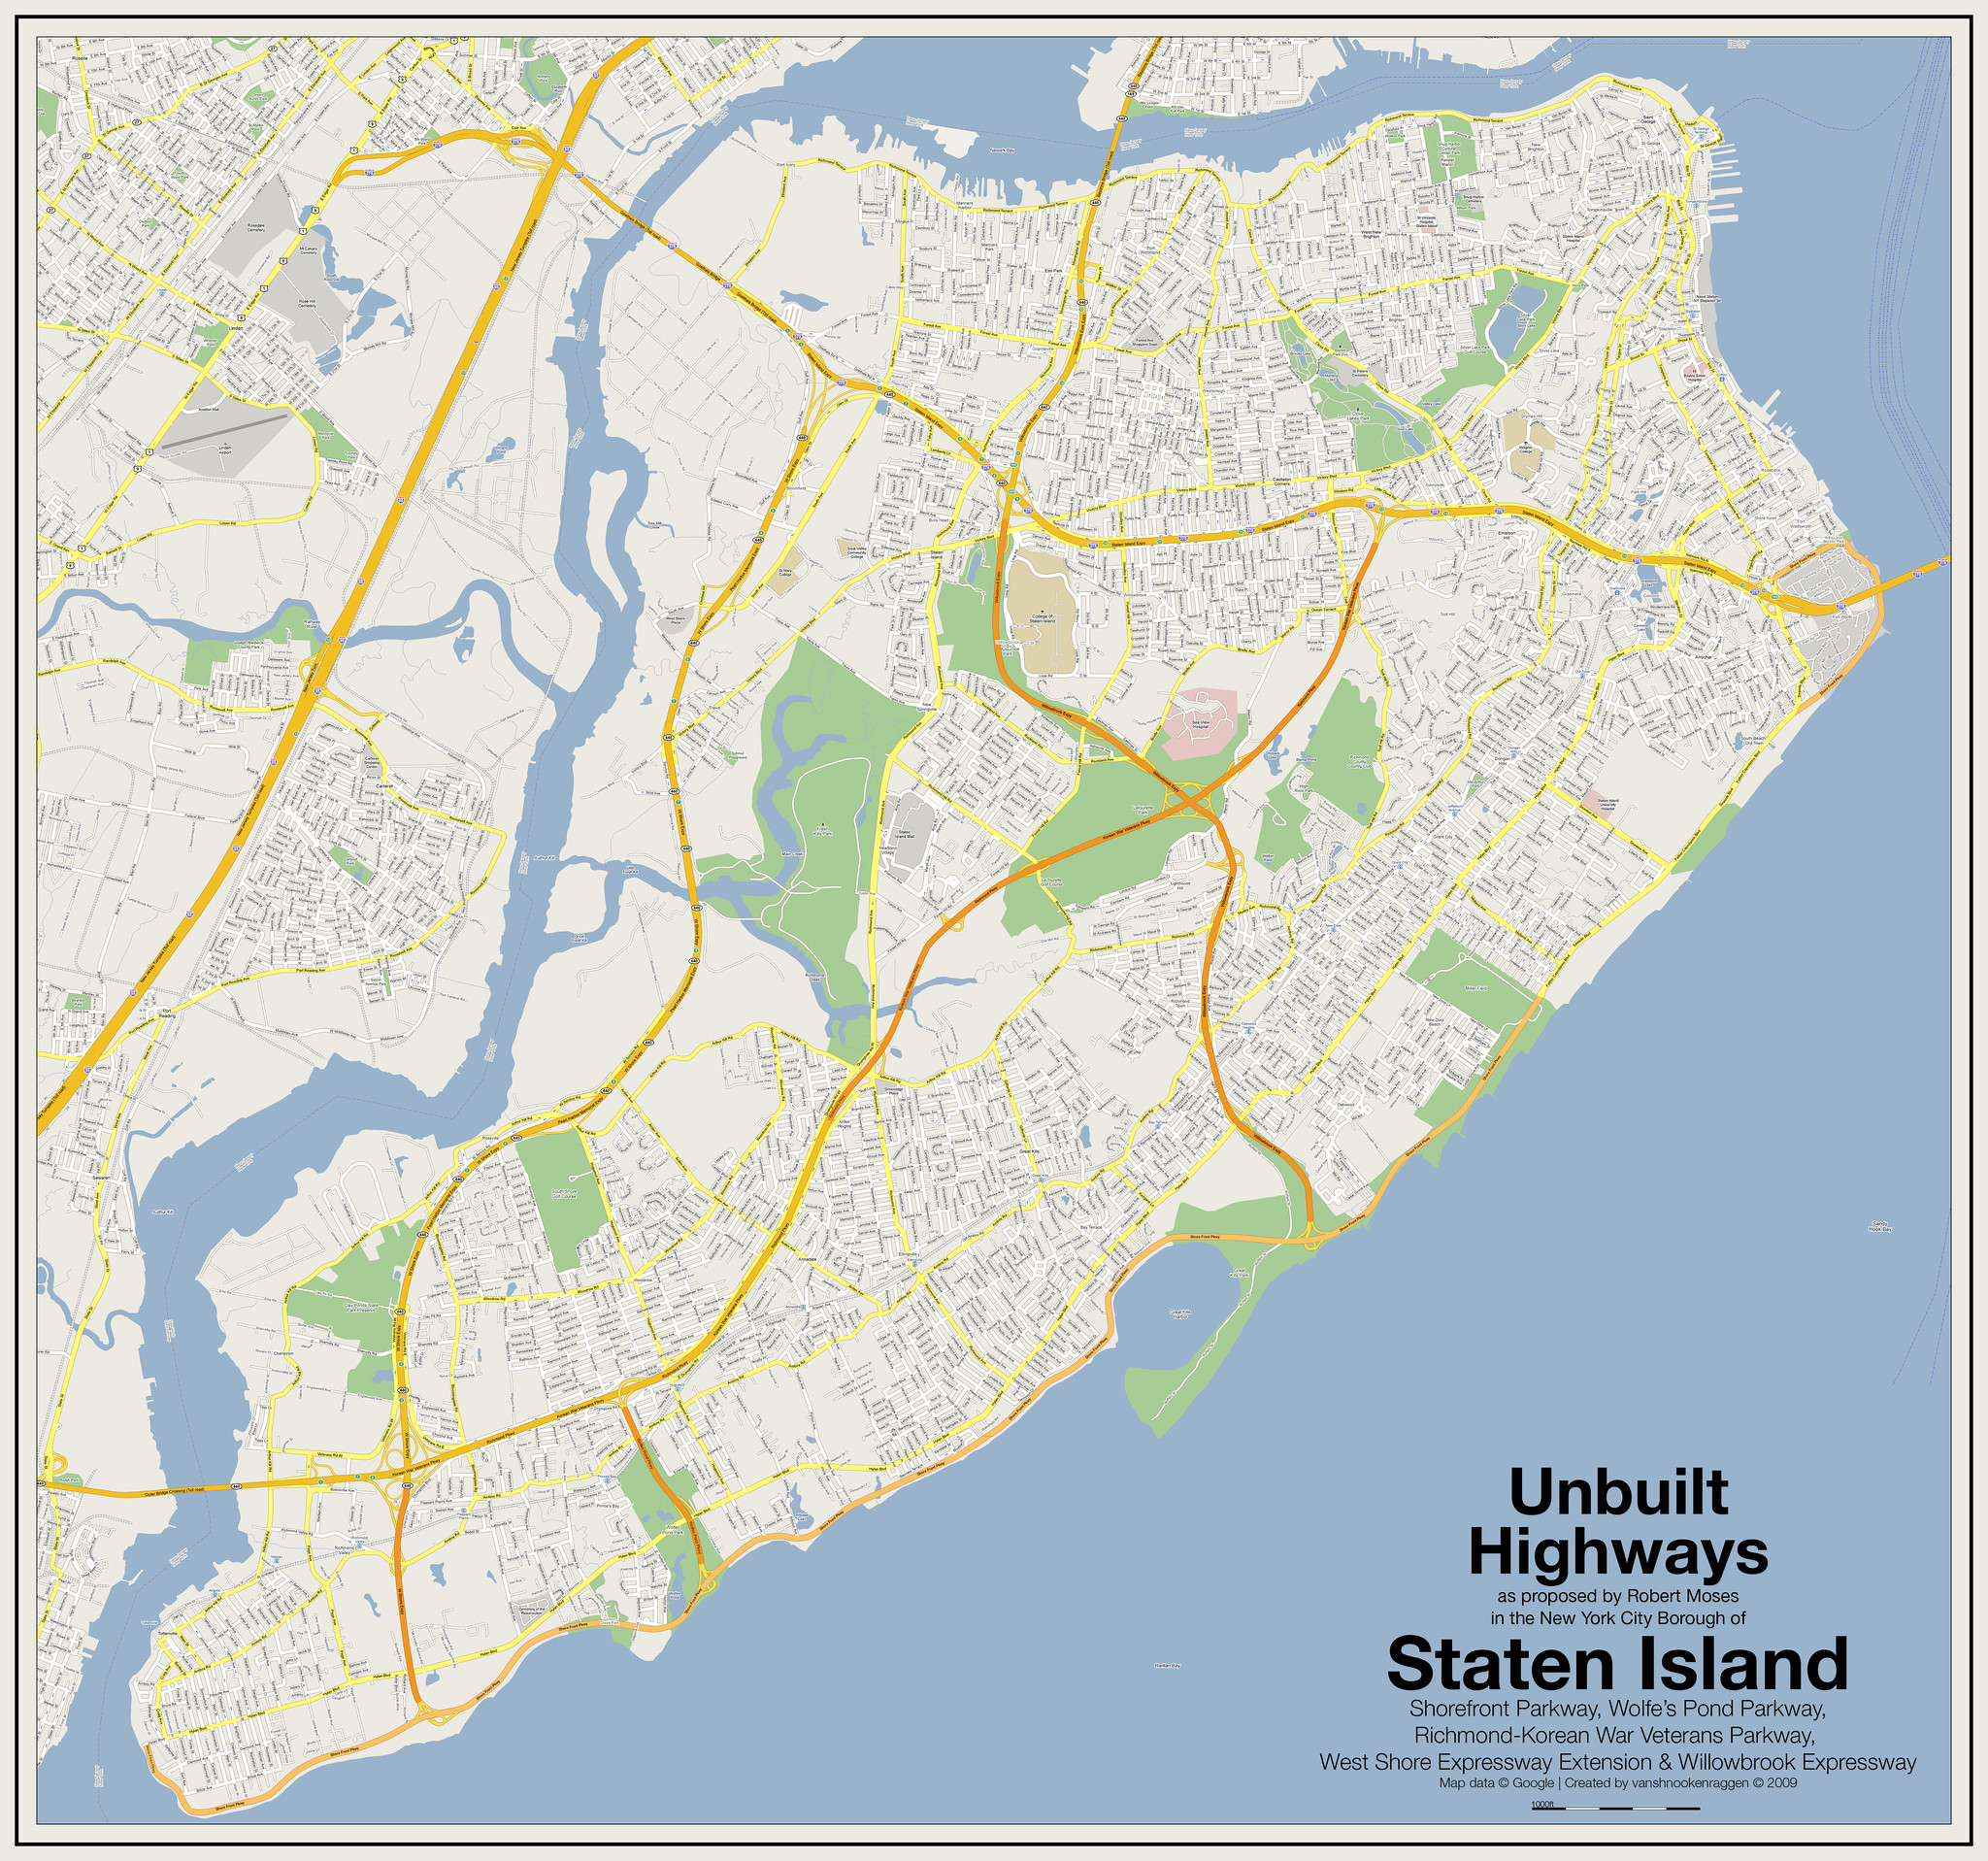 Unbuilt Highways of the Staten Island